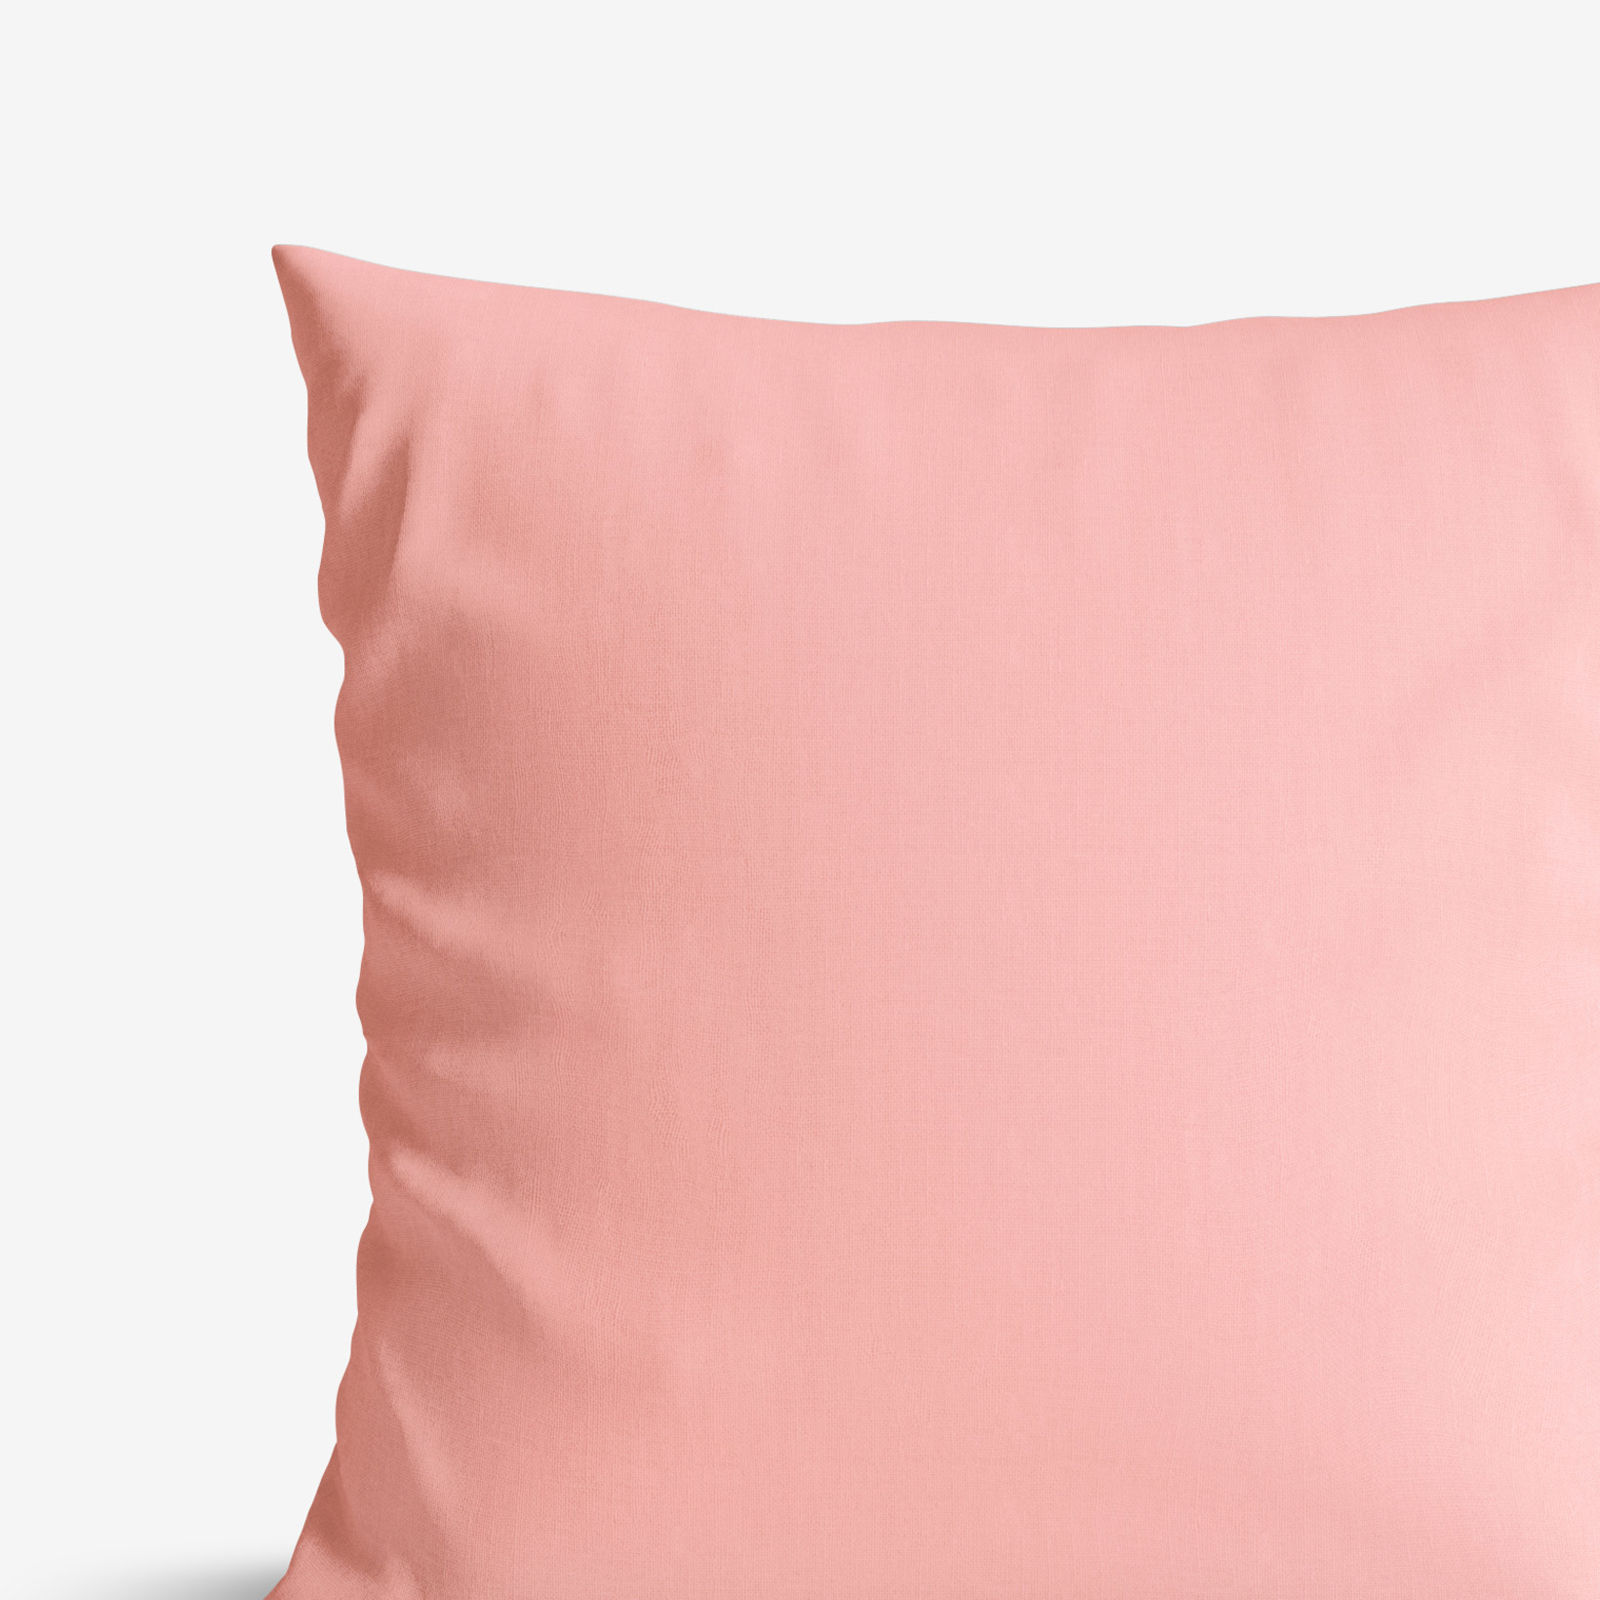 Poszewka na poduszkę bawełniana - pastelowa różowa